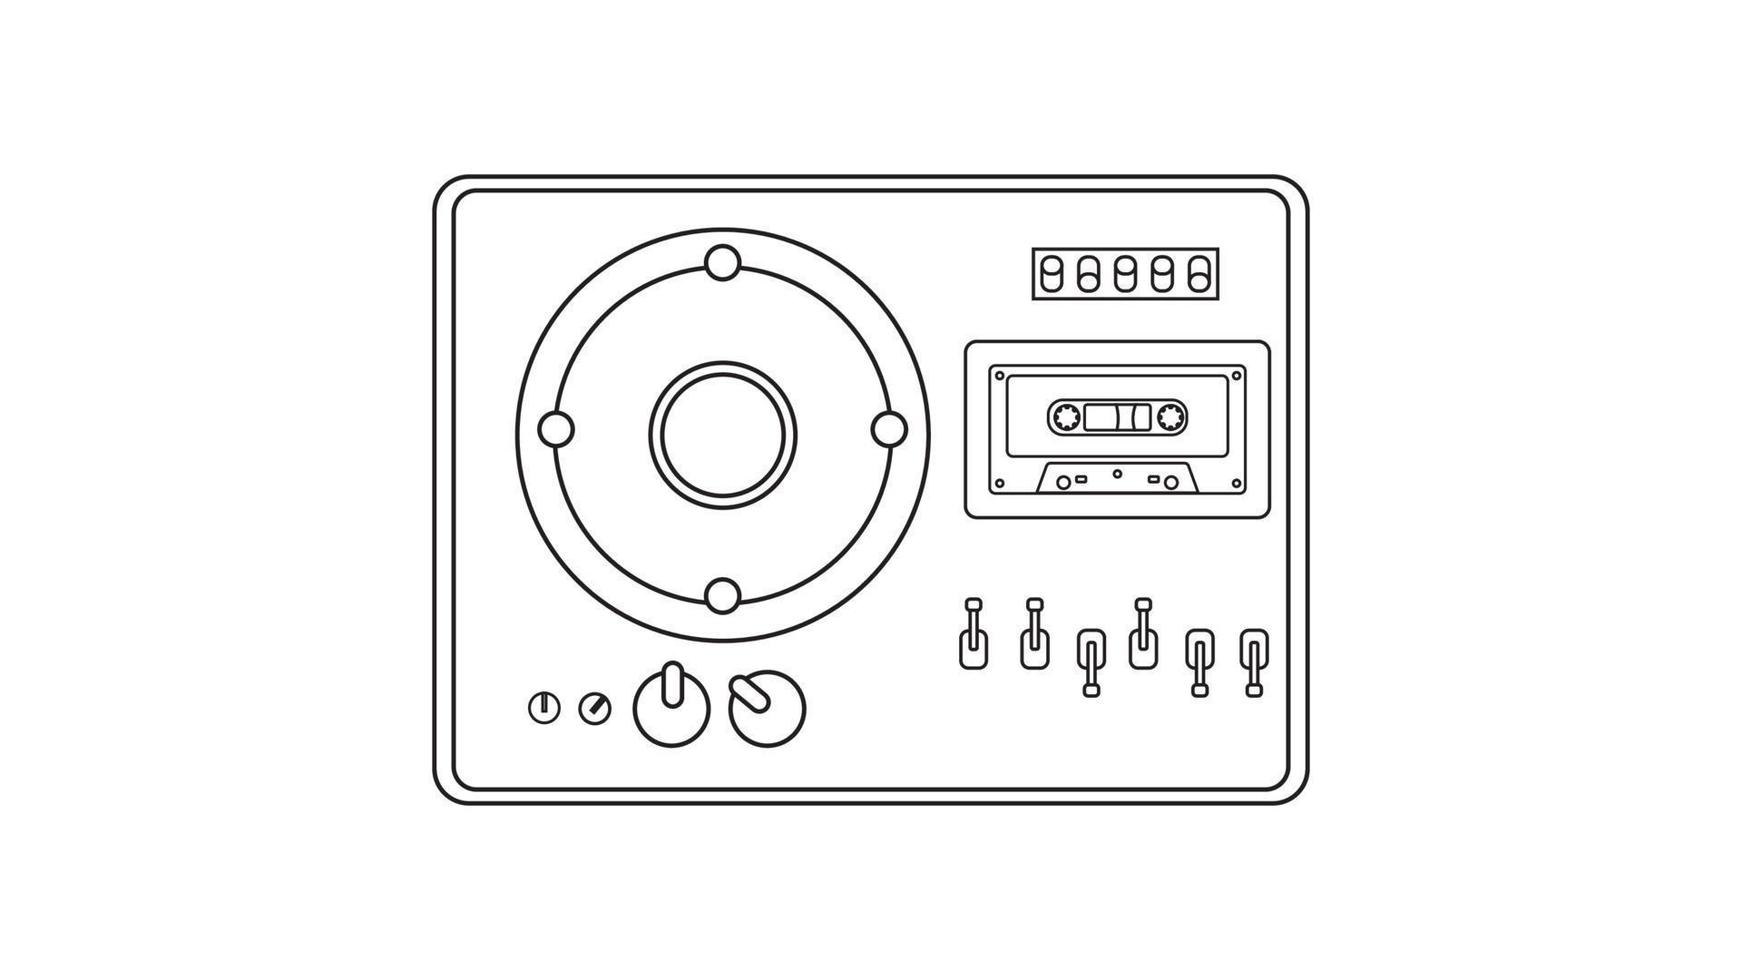 ancien magnétophone à cassettes de musique rétro vintage avec bande magnétique sur bobines des années 70, 80, 90. icône noir et blanc. illustration vectorielle vecteur